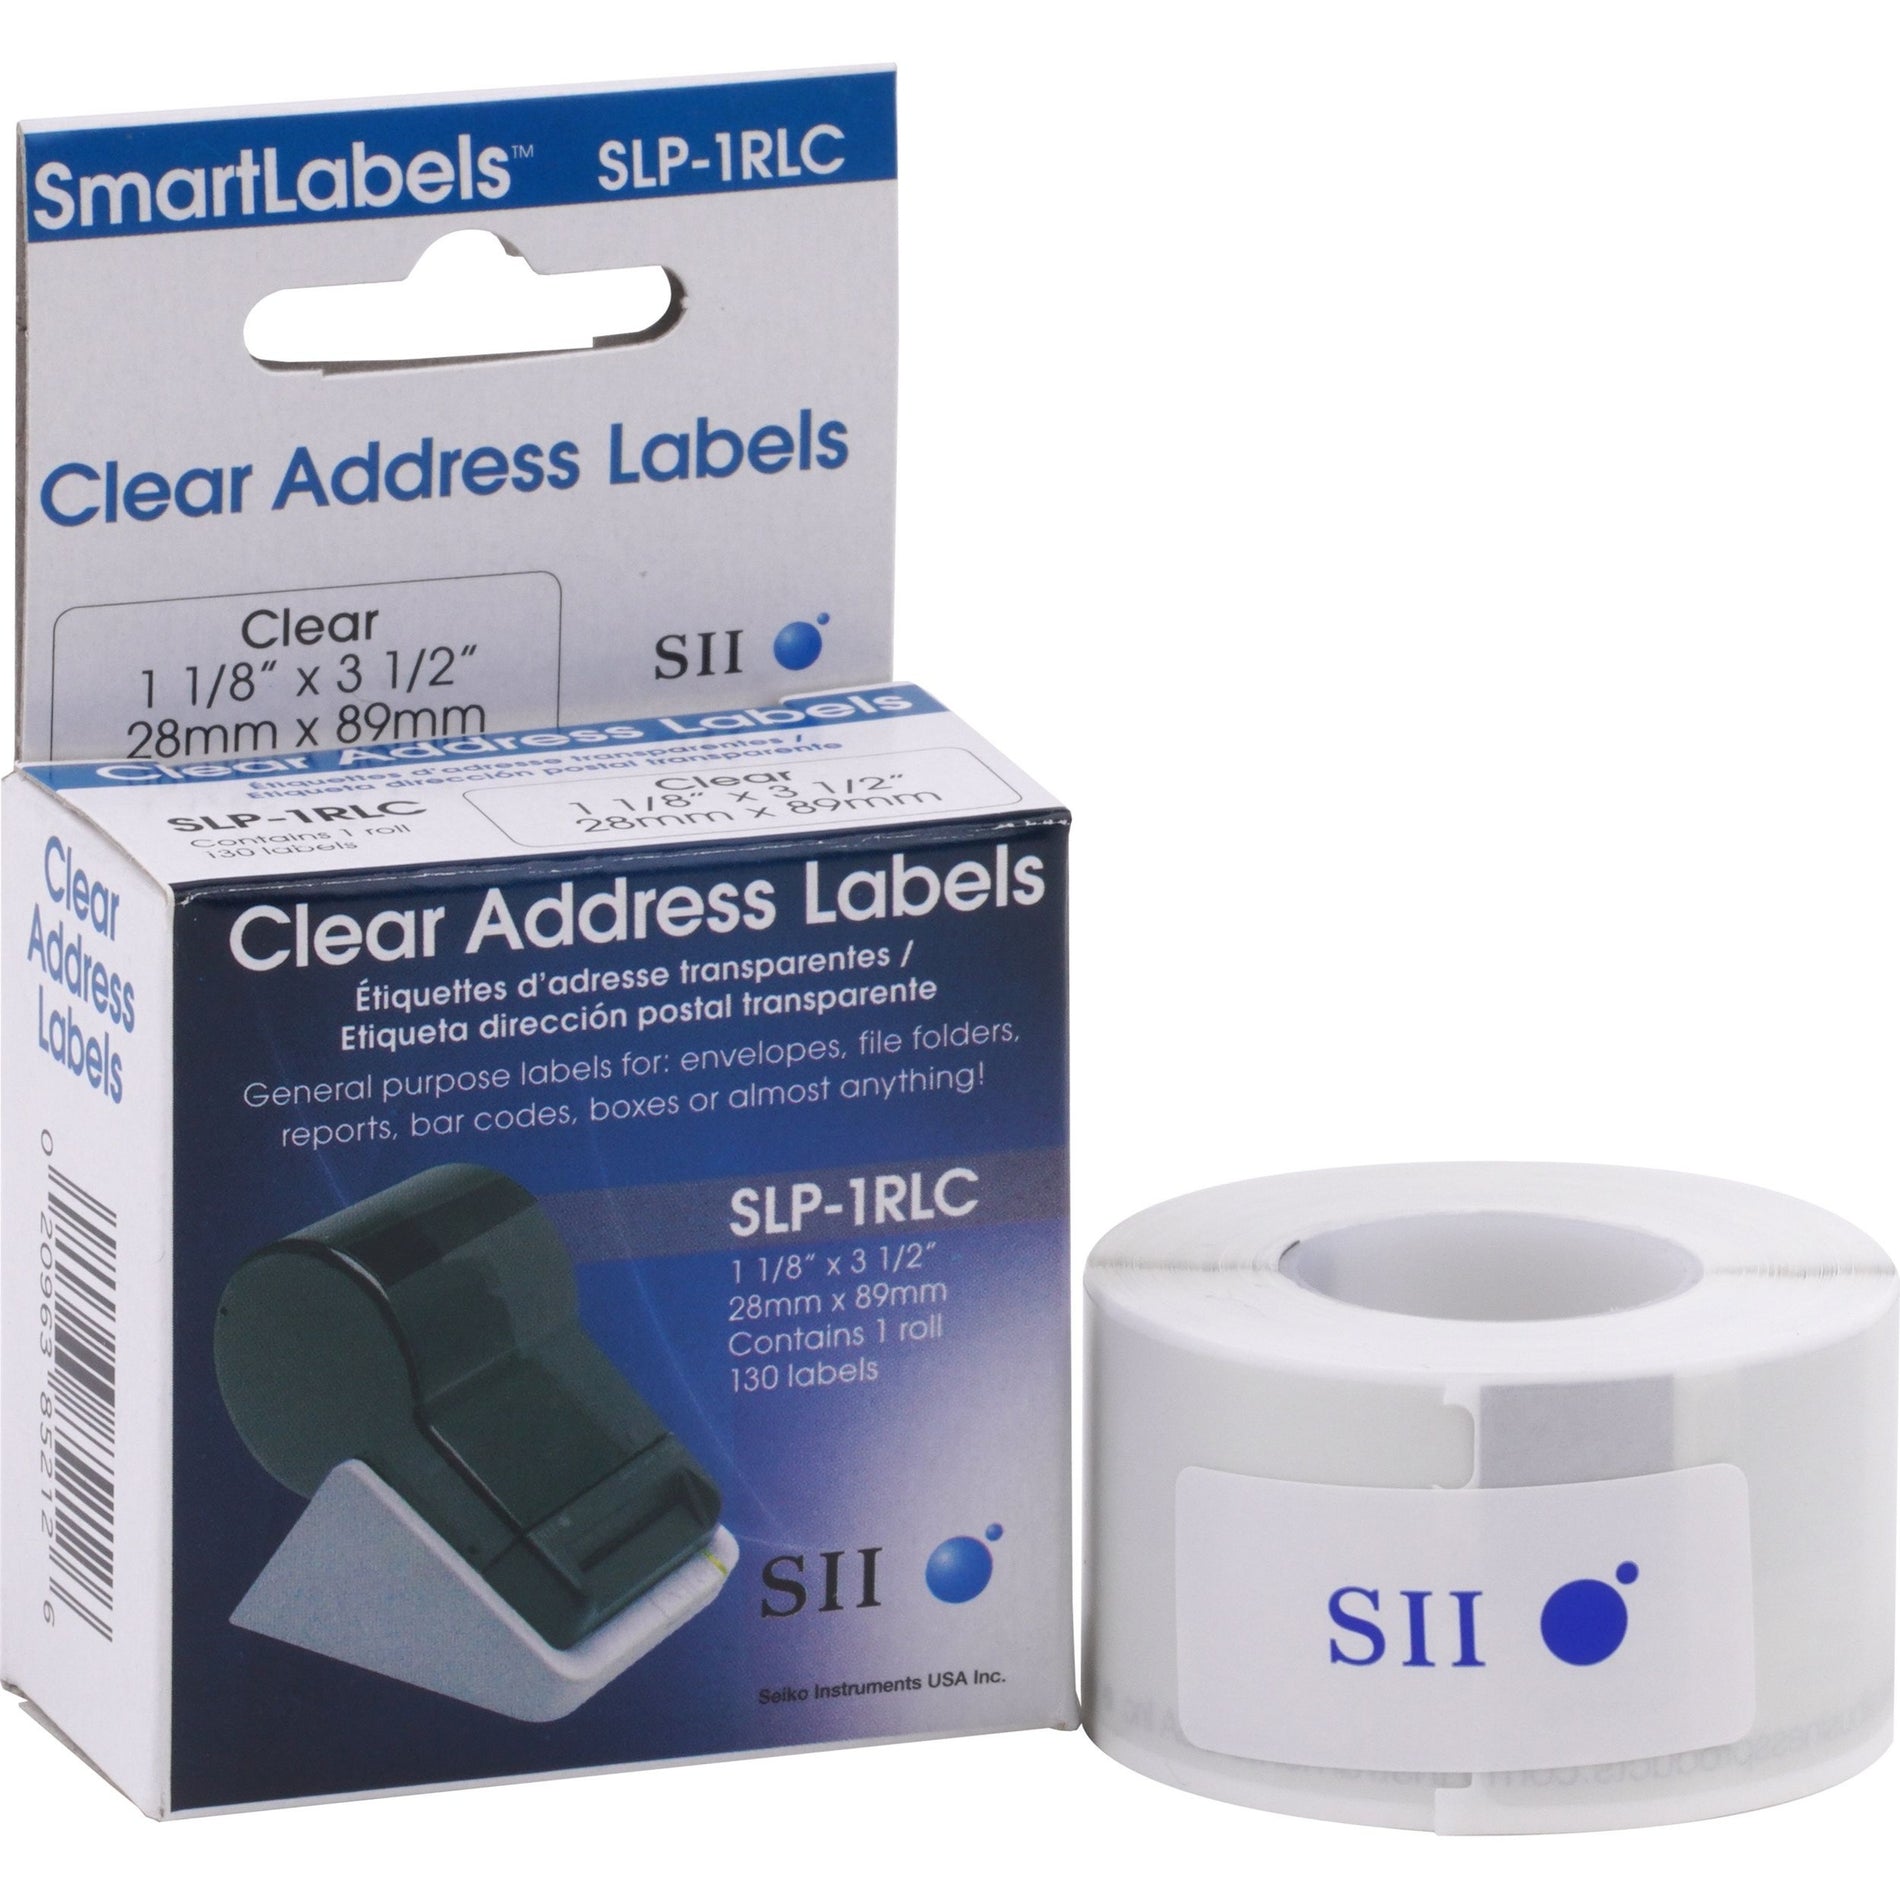 Seiko SLP-1RLC Address Label, Clear, 3 1/2" x 1 1/8", 130 Labels per Roll